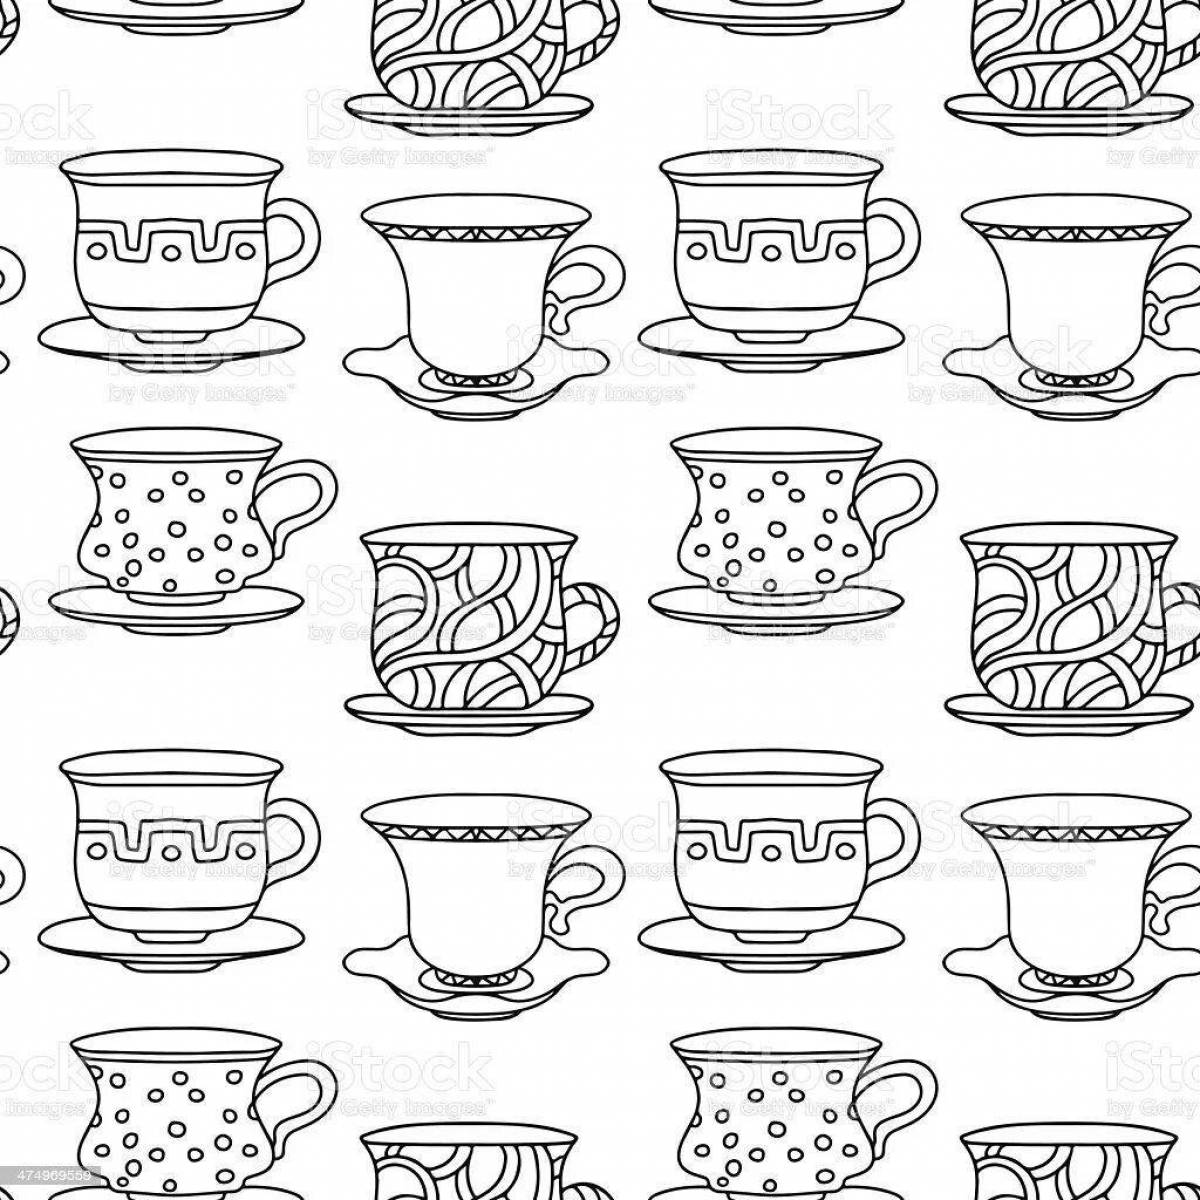 Polka dot holiday mug coloring page